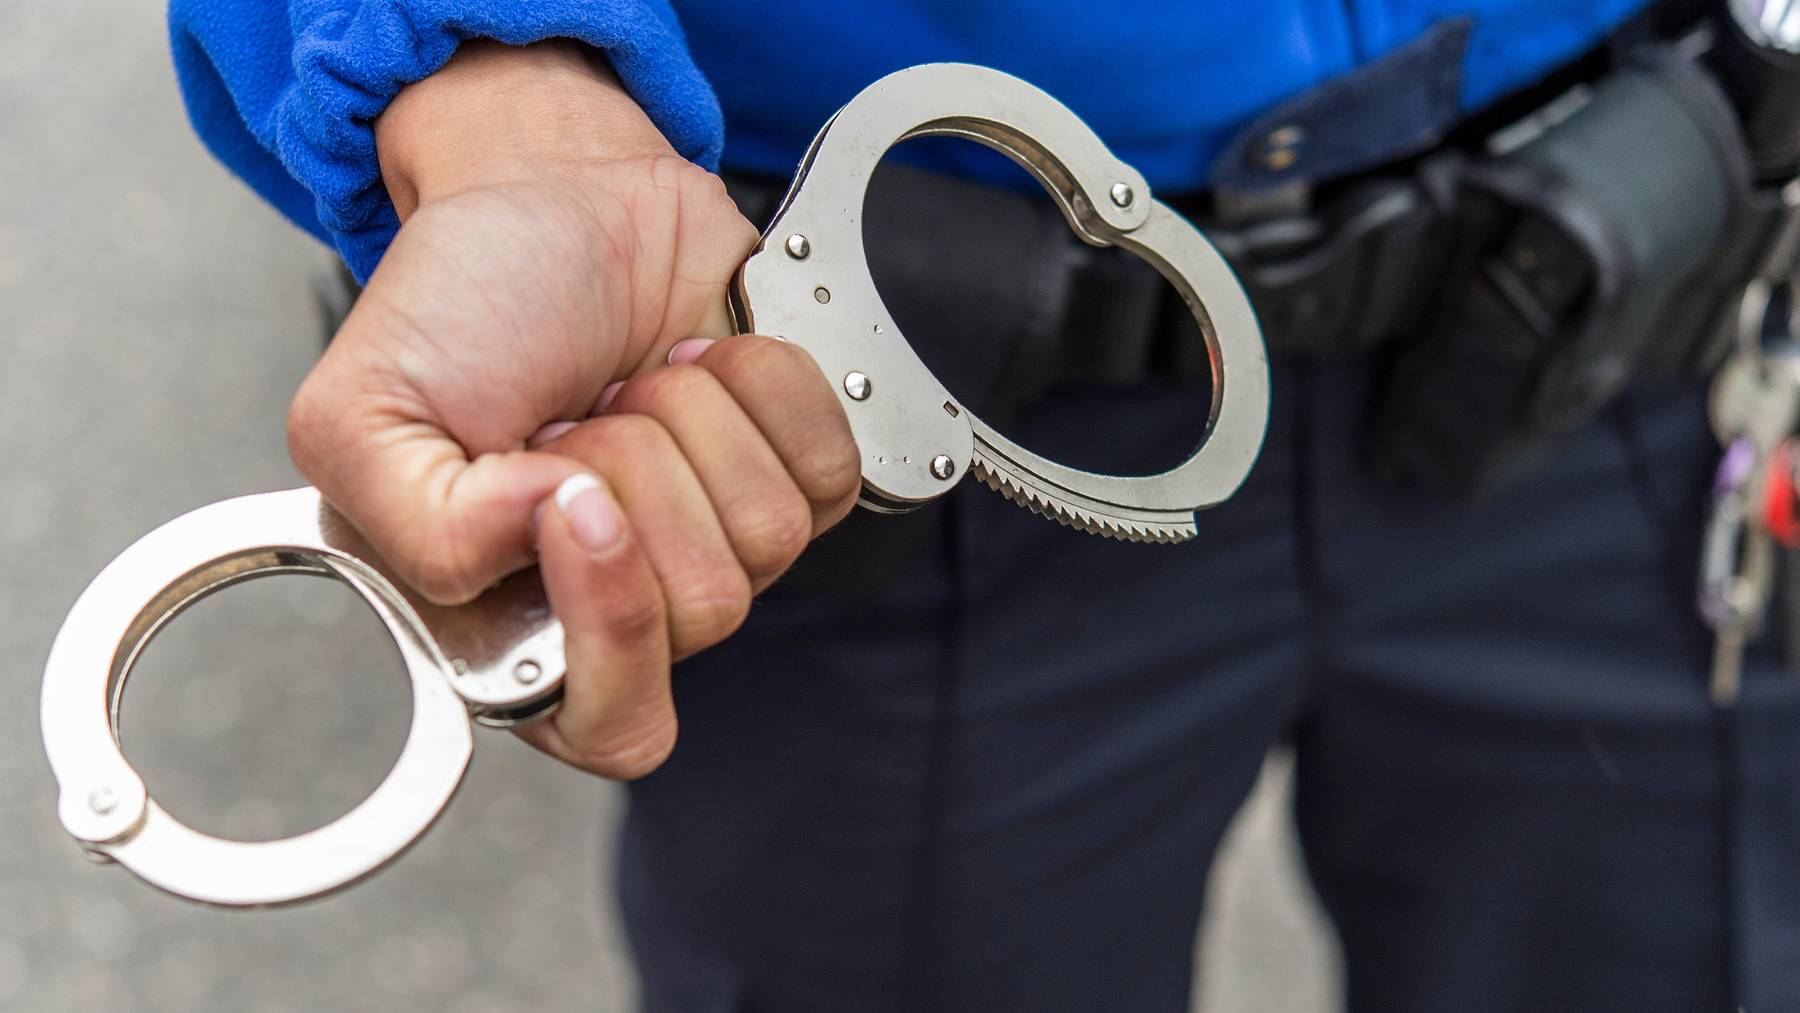 Die Stadtpolizei Winterthur hat vergangenen Freitag einen Tatverdächtigen verhaftet, weil er sich an zwei Mädchen vergangen haben soll. (Symbolbild)